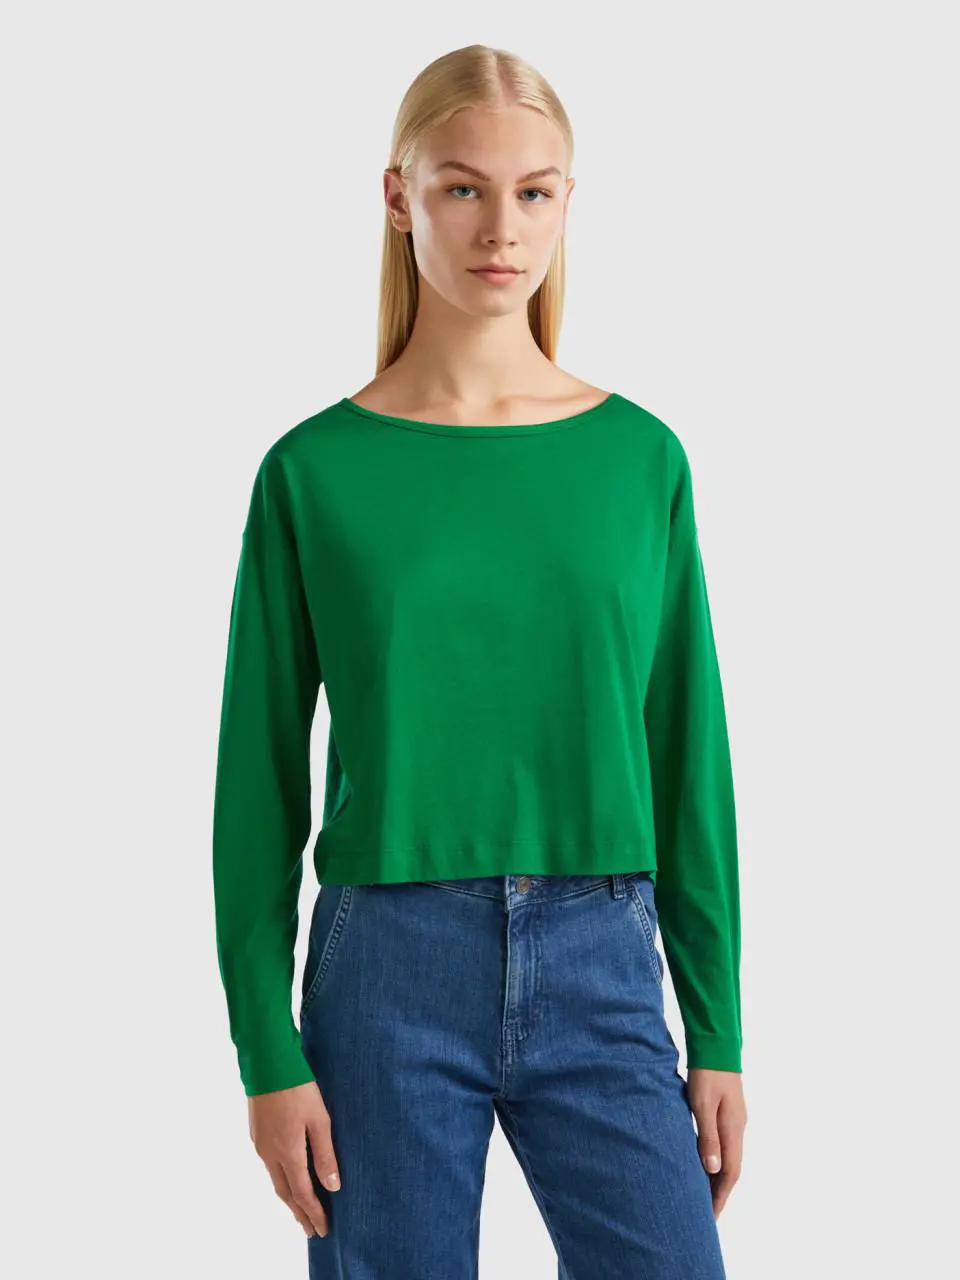 Benetton forest green long fiber cotton t-shirt. 1